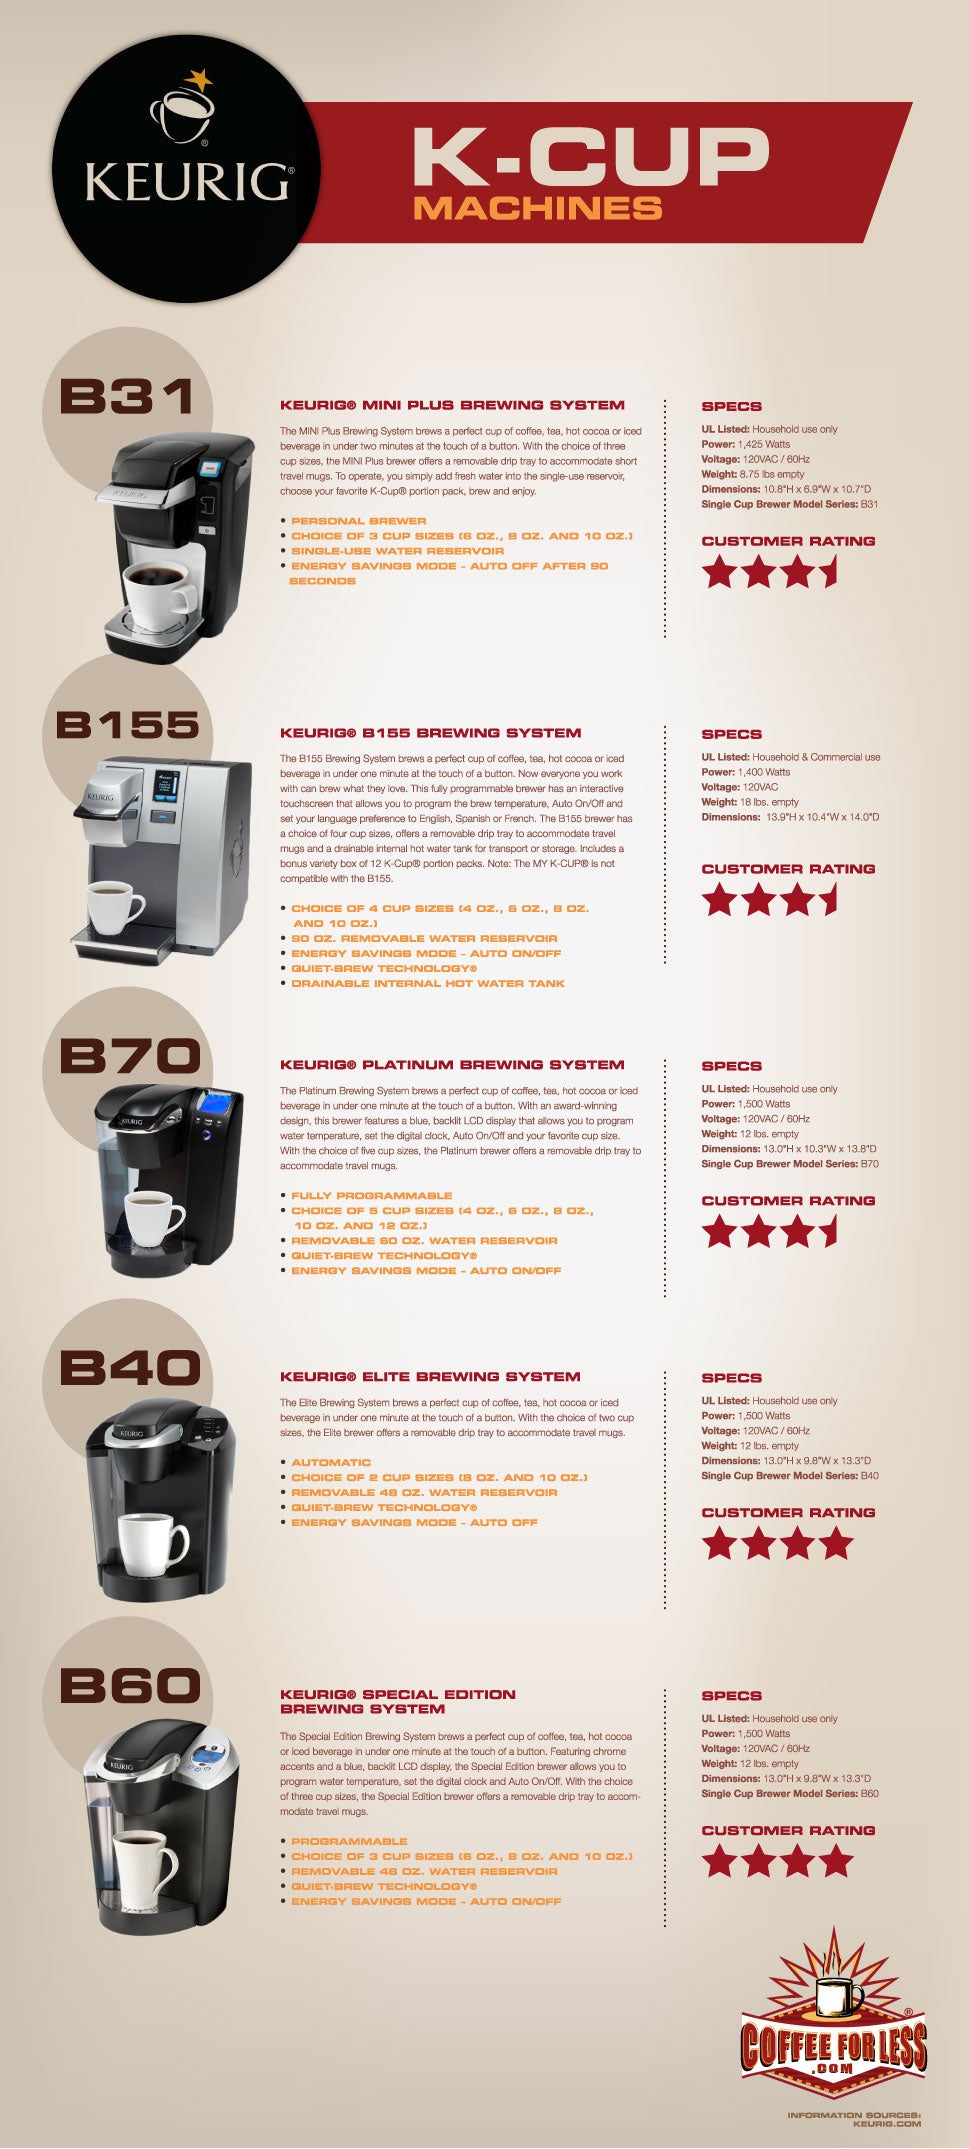 Keurig K-Cup machines descriptions, details, and comparisons.